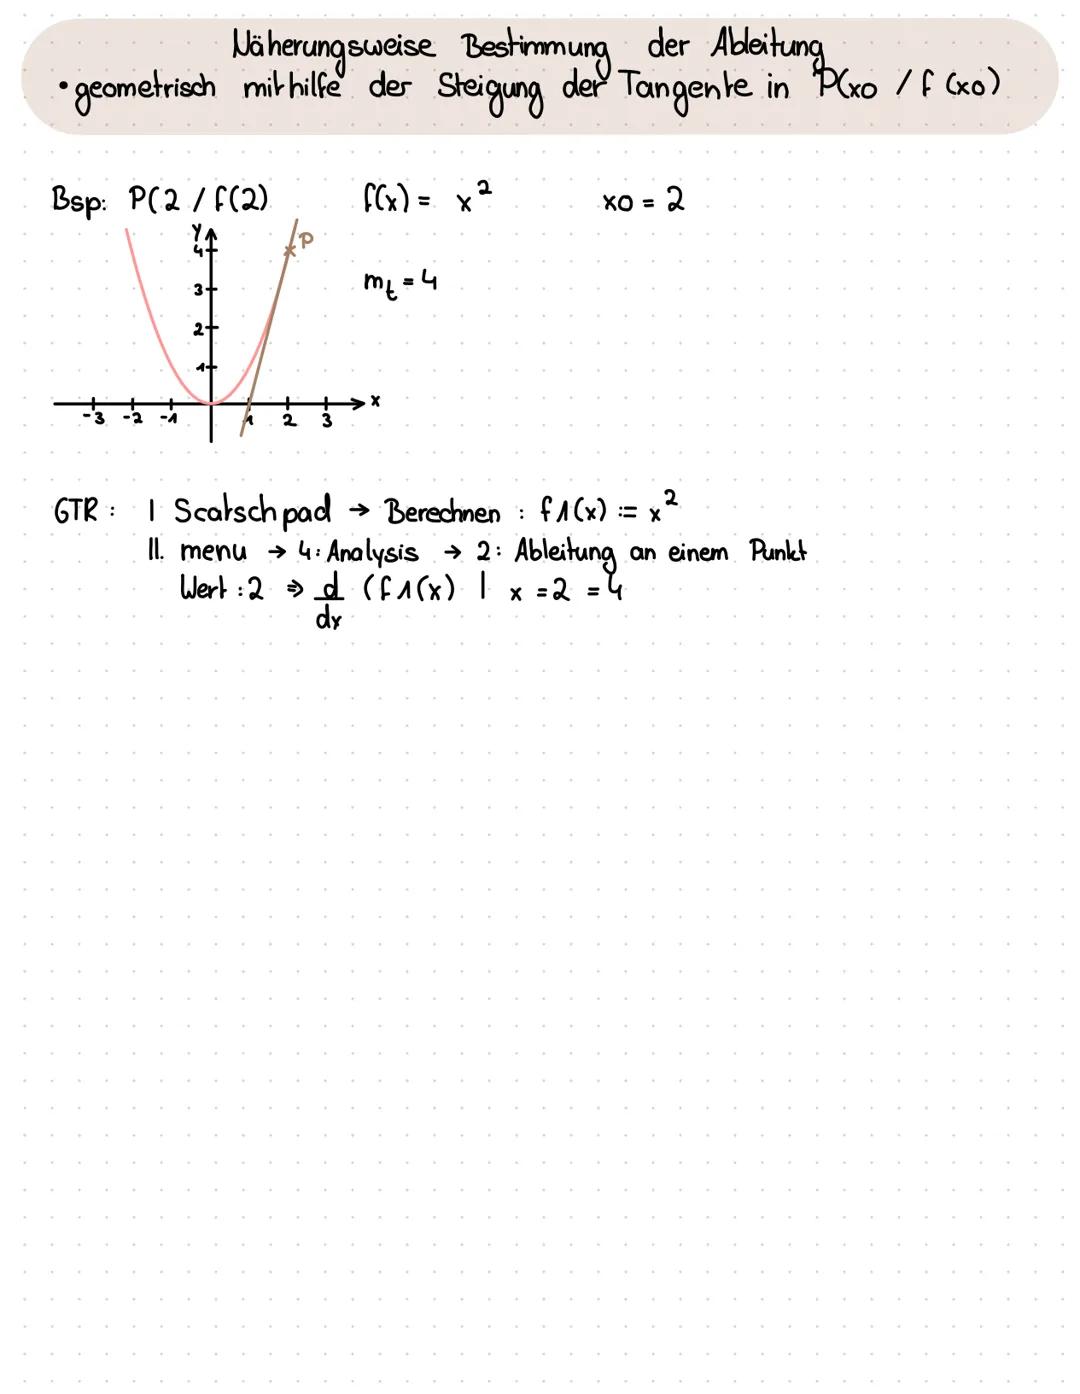 -Ableitungen
Näherungsweise Bestimmung der Ableitung
•h-Methode
Intervallänge h kleiner werden lassen (h→0)
Bsp: f(x)=x2
प
-0,1
-0,01
-0.001